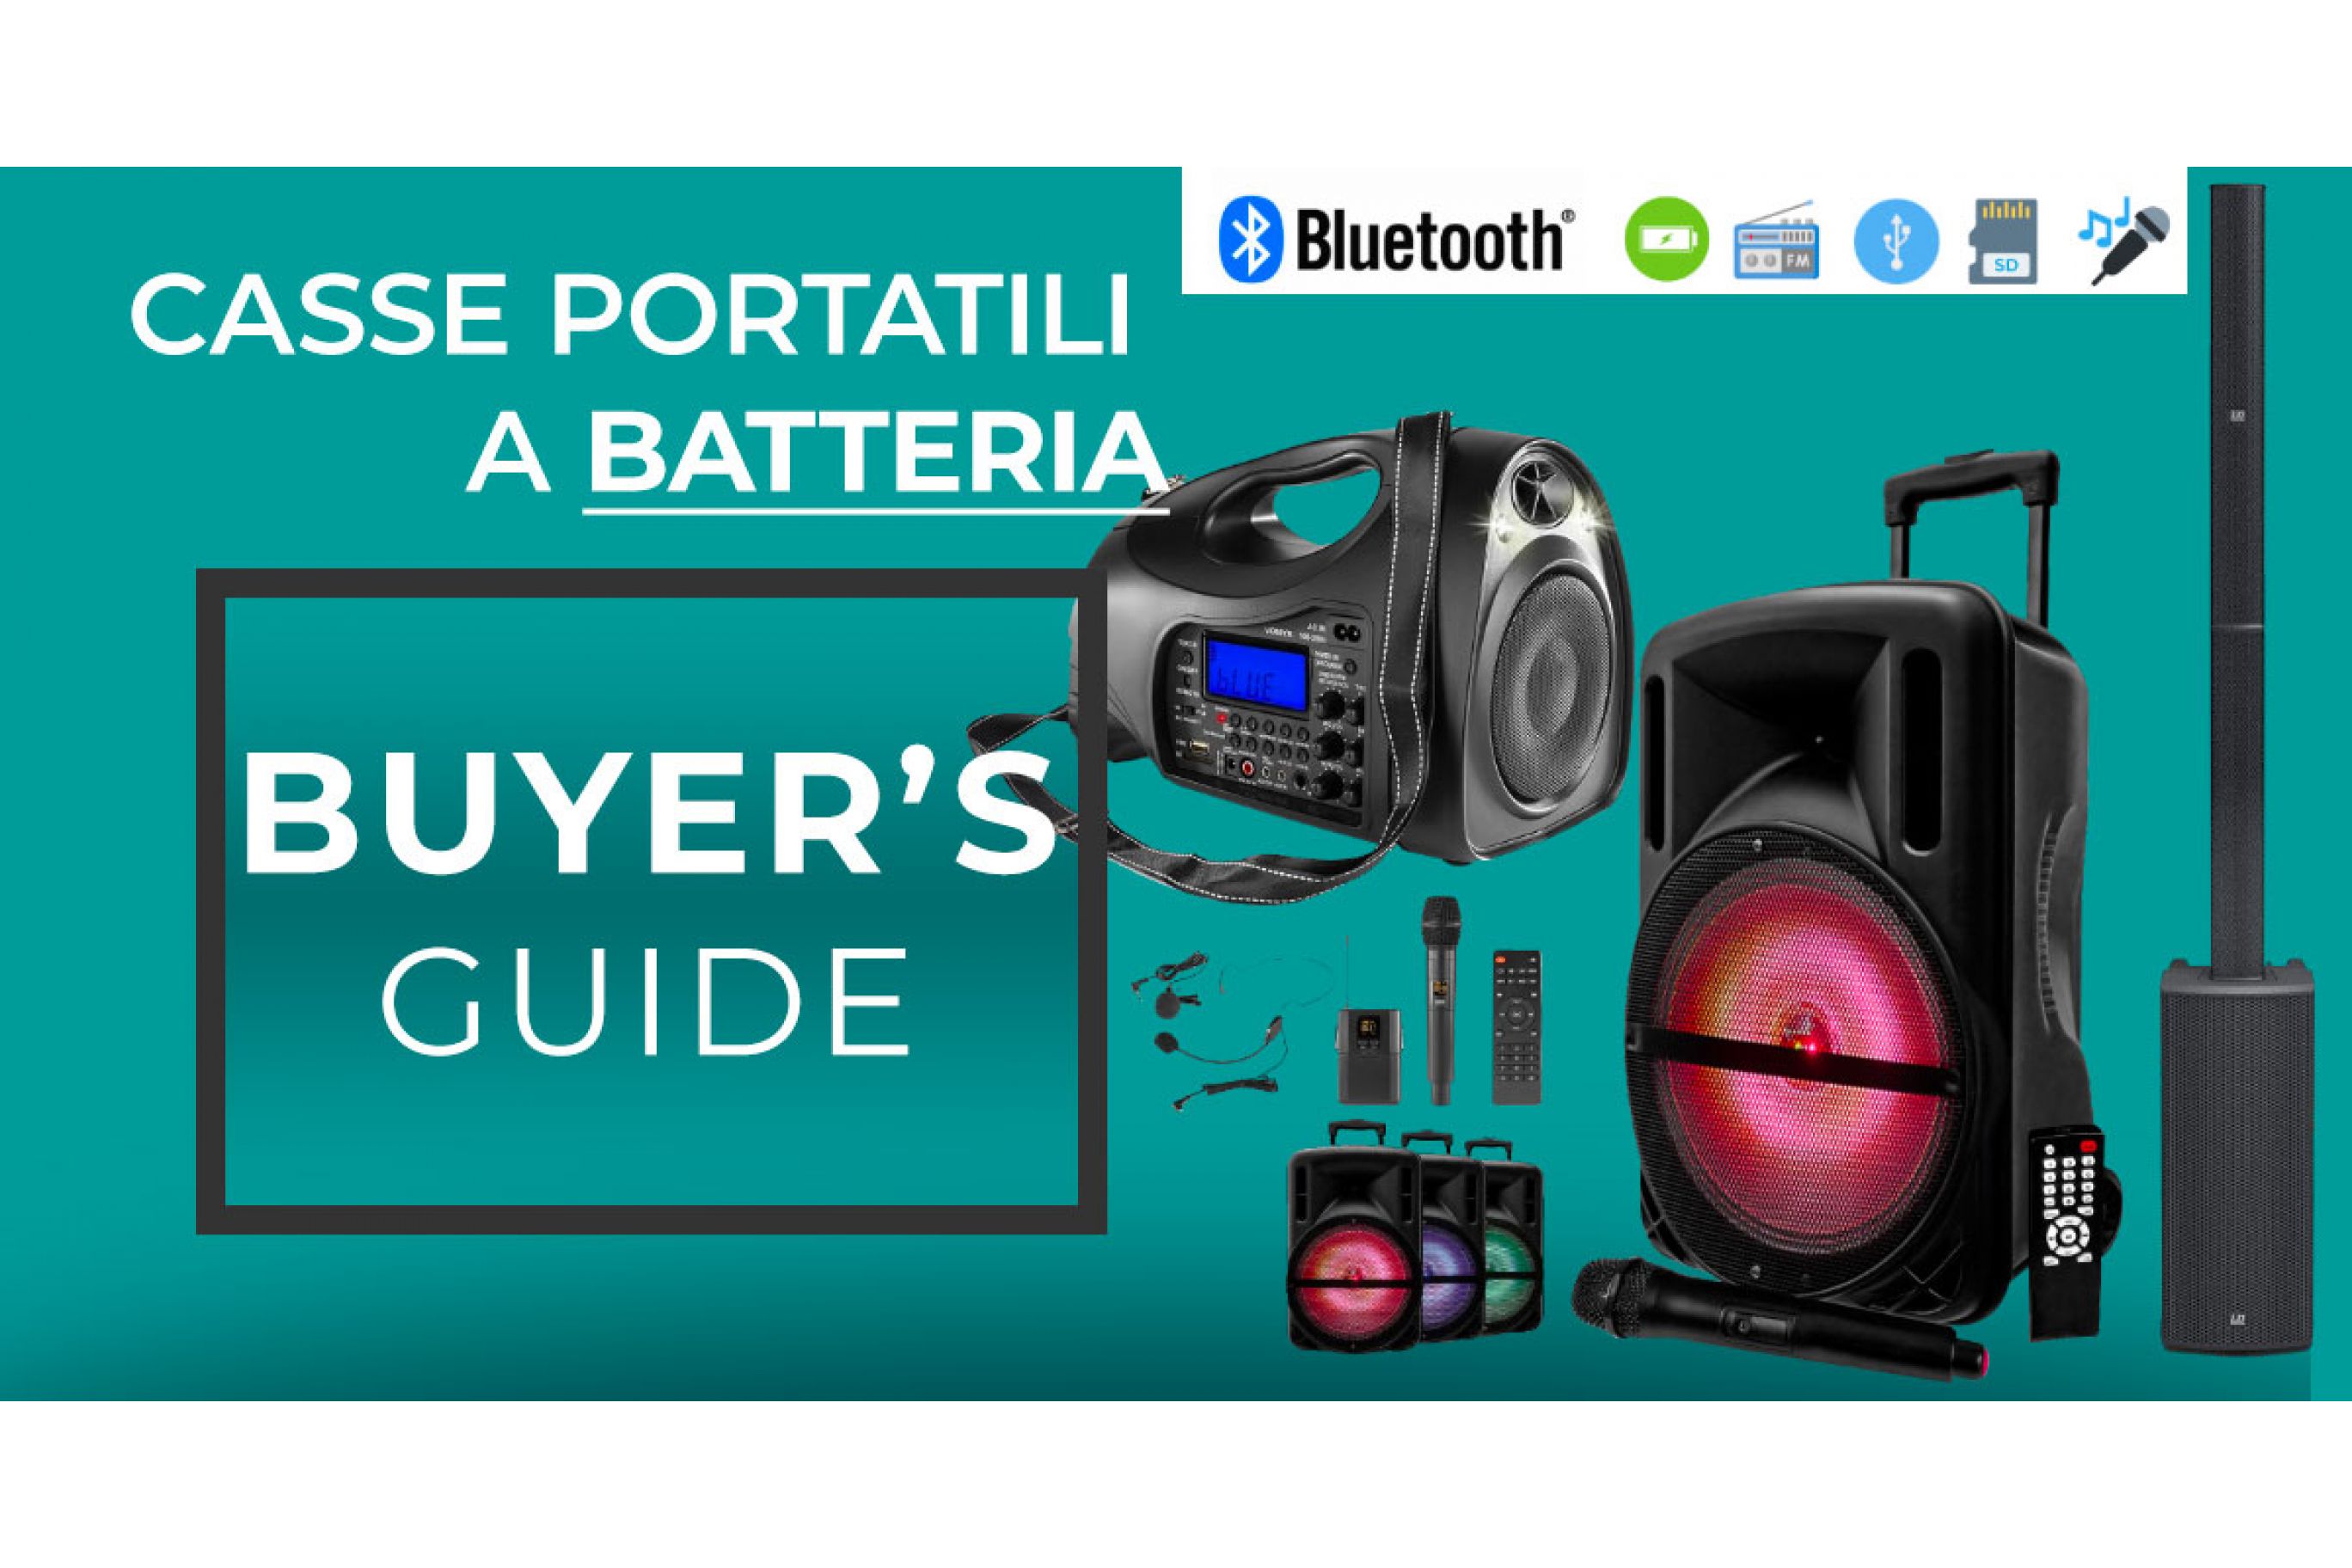 Le casse Bluetooth con batterie rimovibili: i vantaggi e gli svantaggi